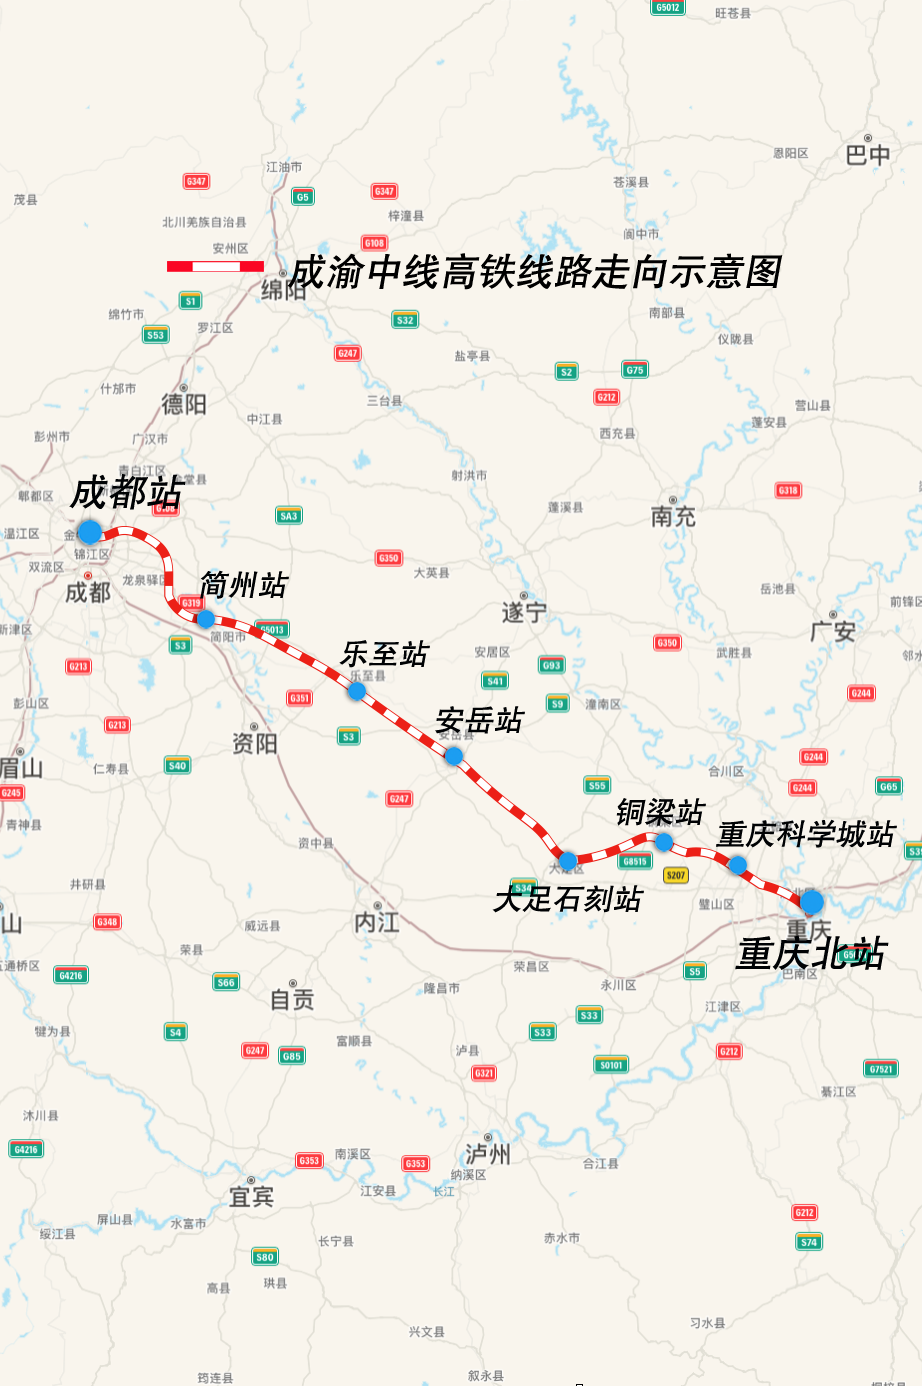 重庆62成都,重庆62昆明,重庆62上海,三条高铁进度条刷新!